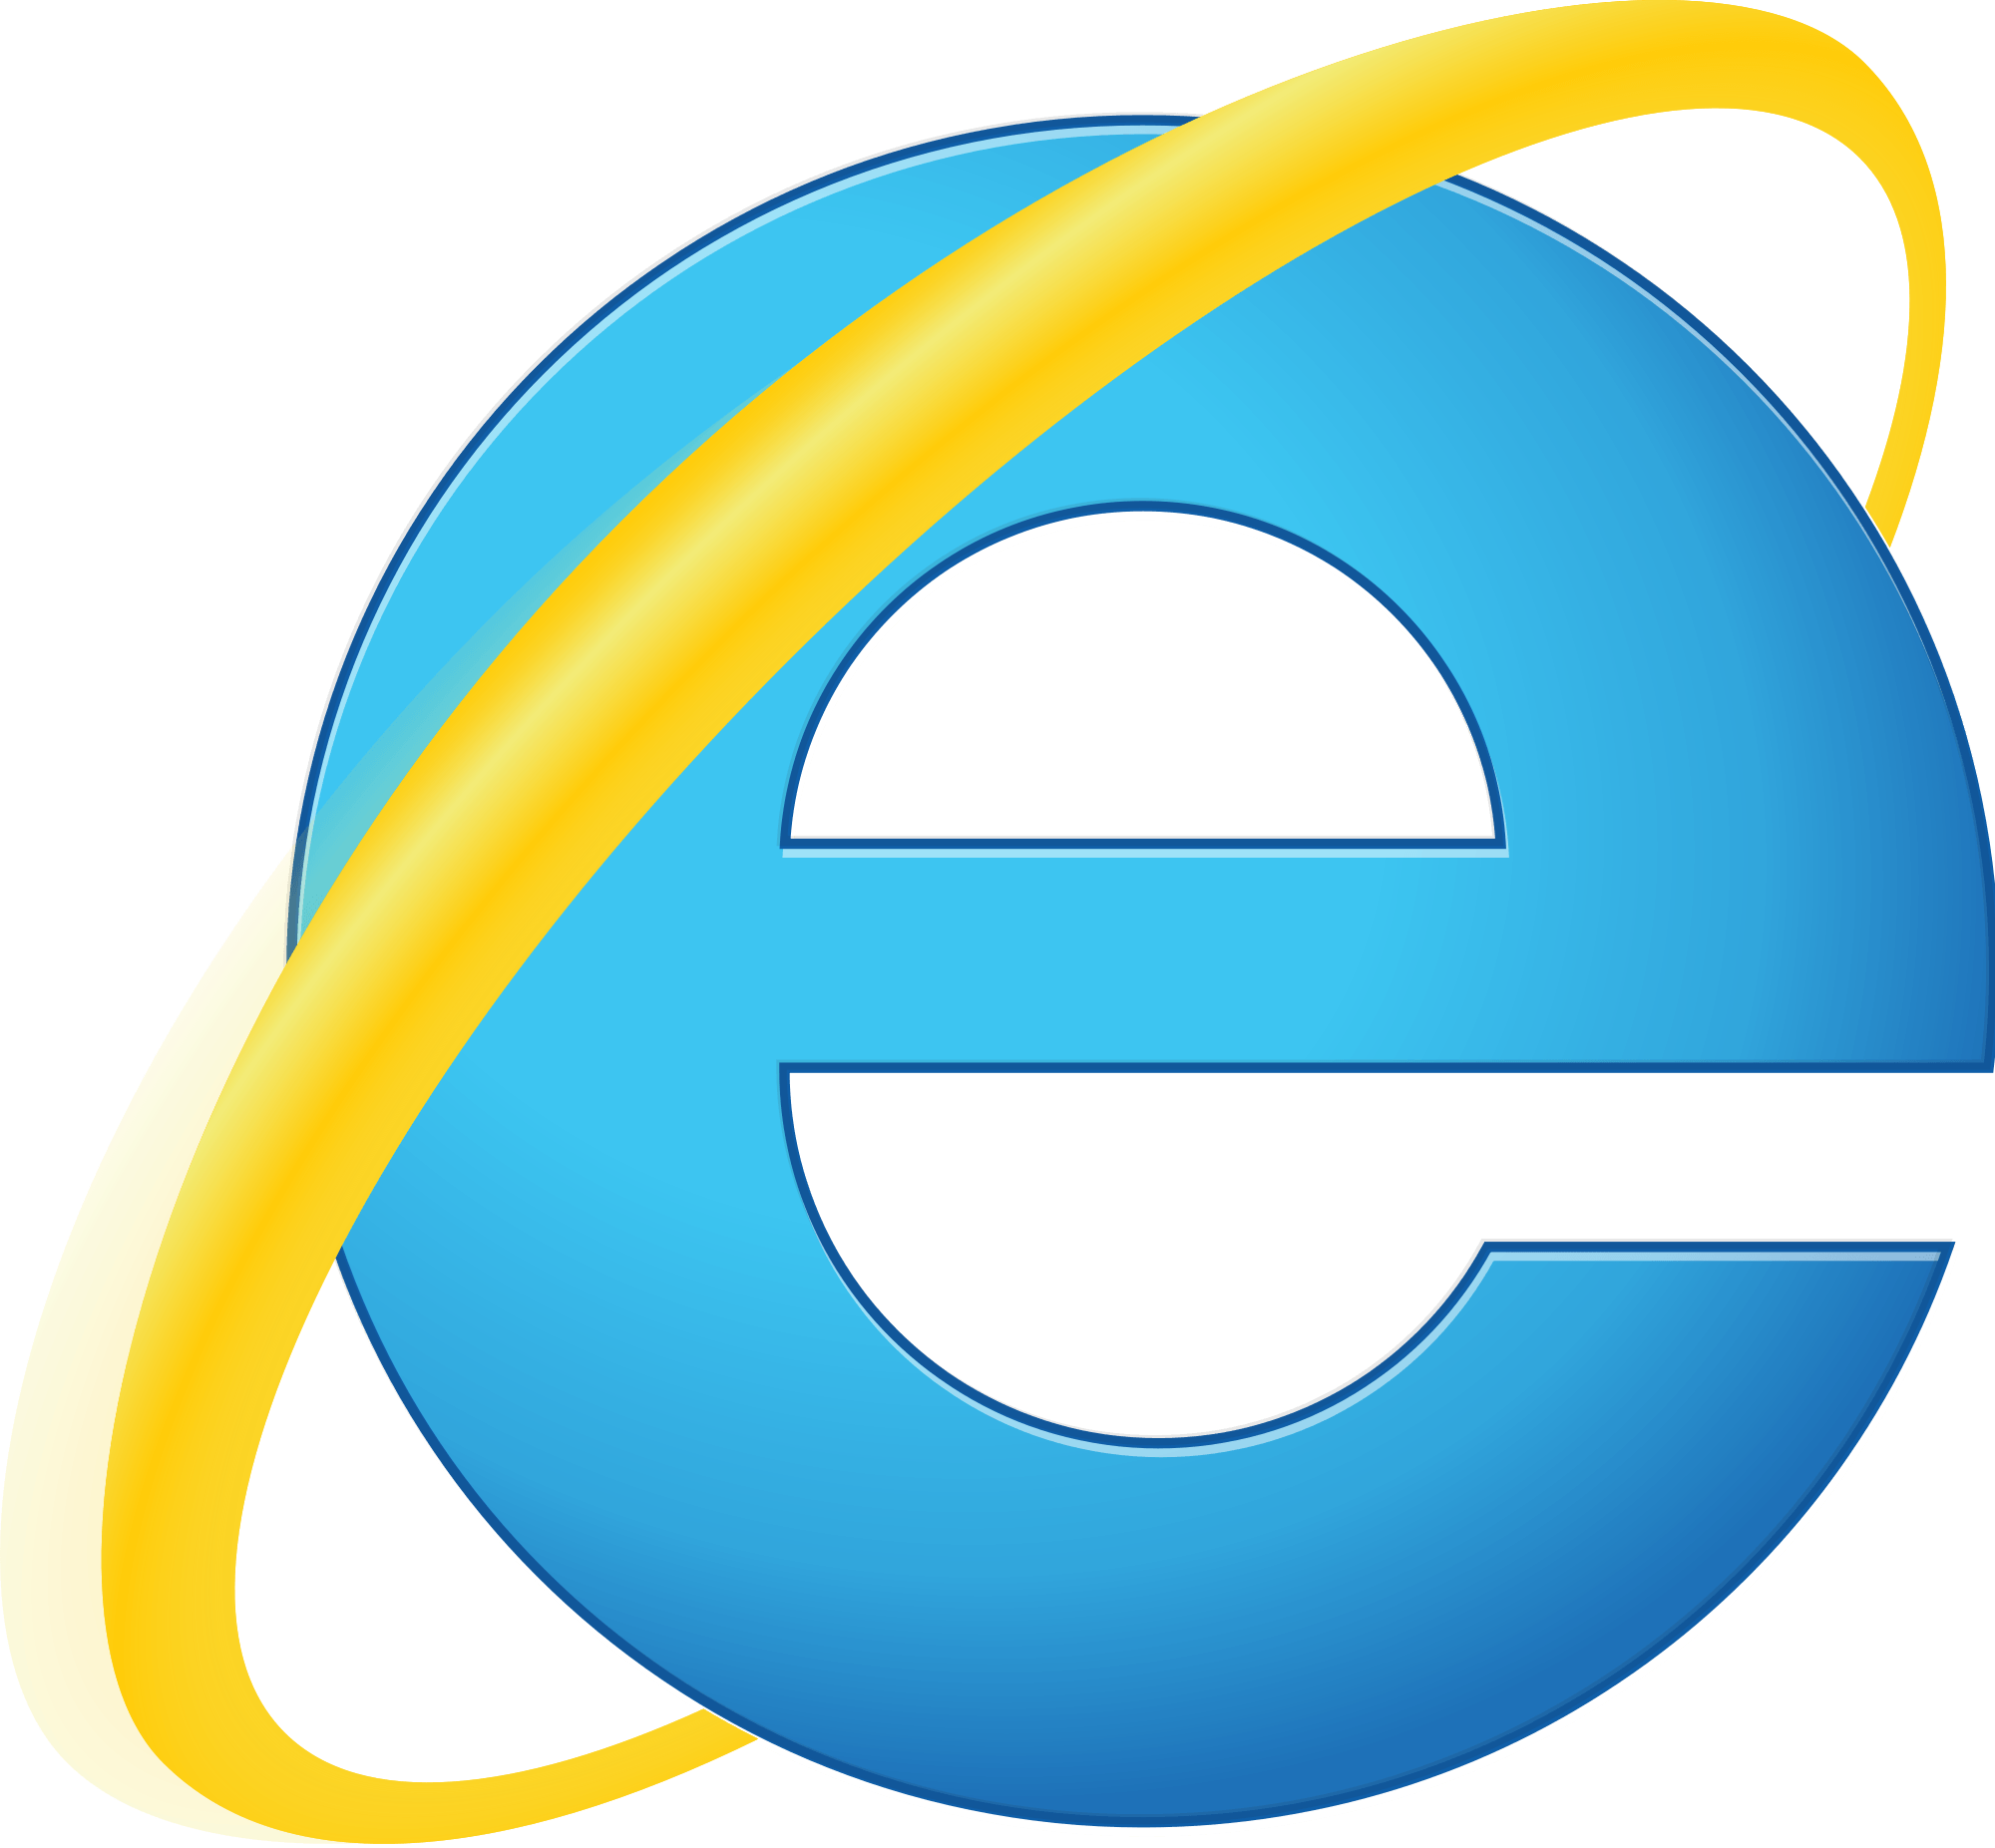 Internet Explorer 10 Logo - Internet Explorer Ceasing Browser Support